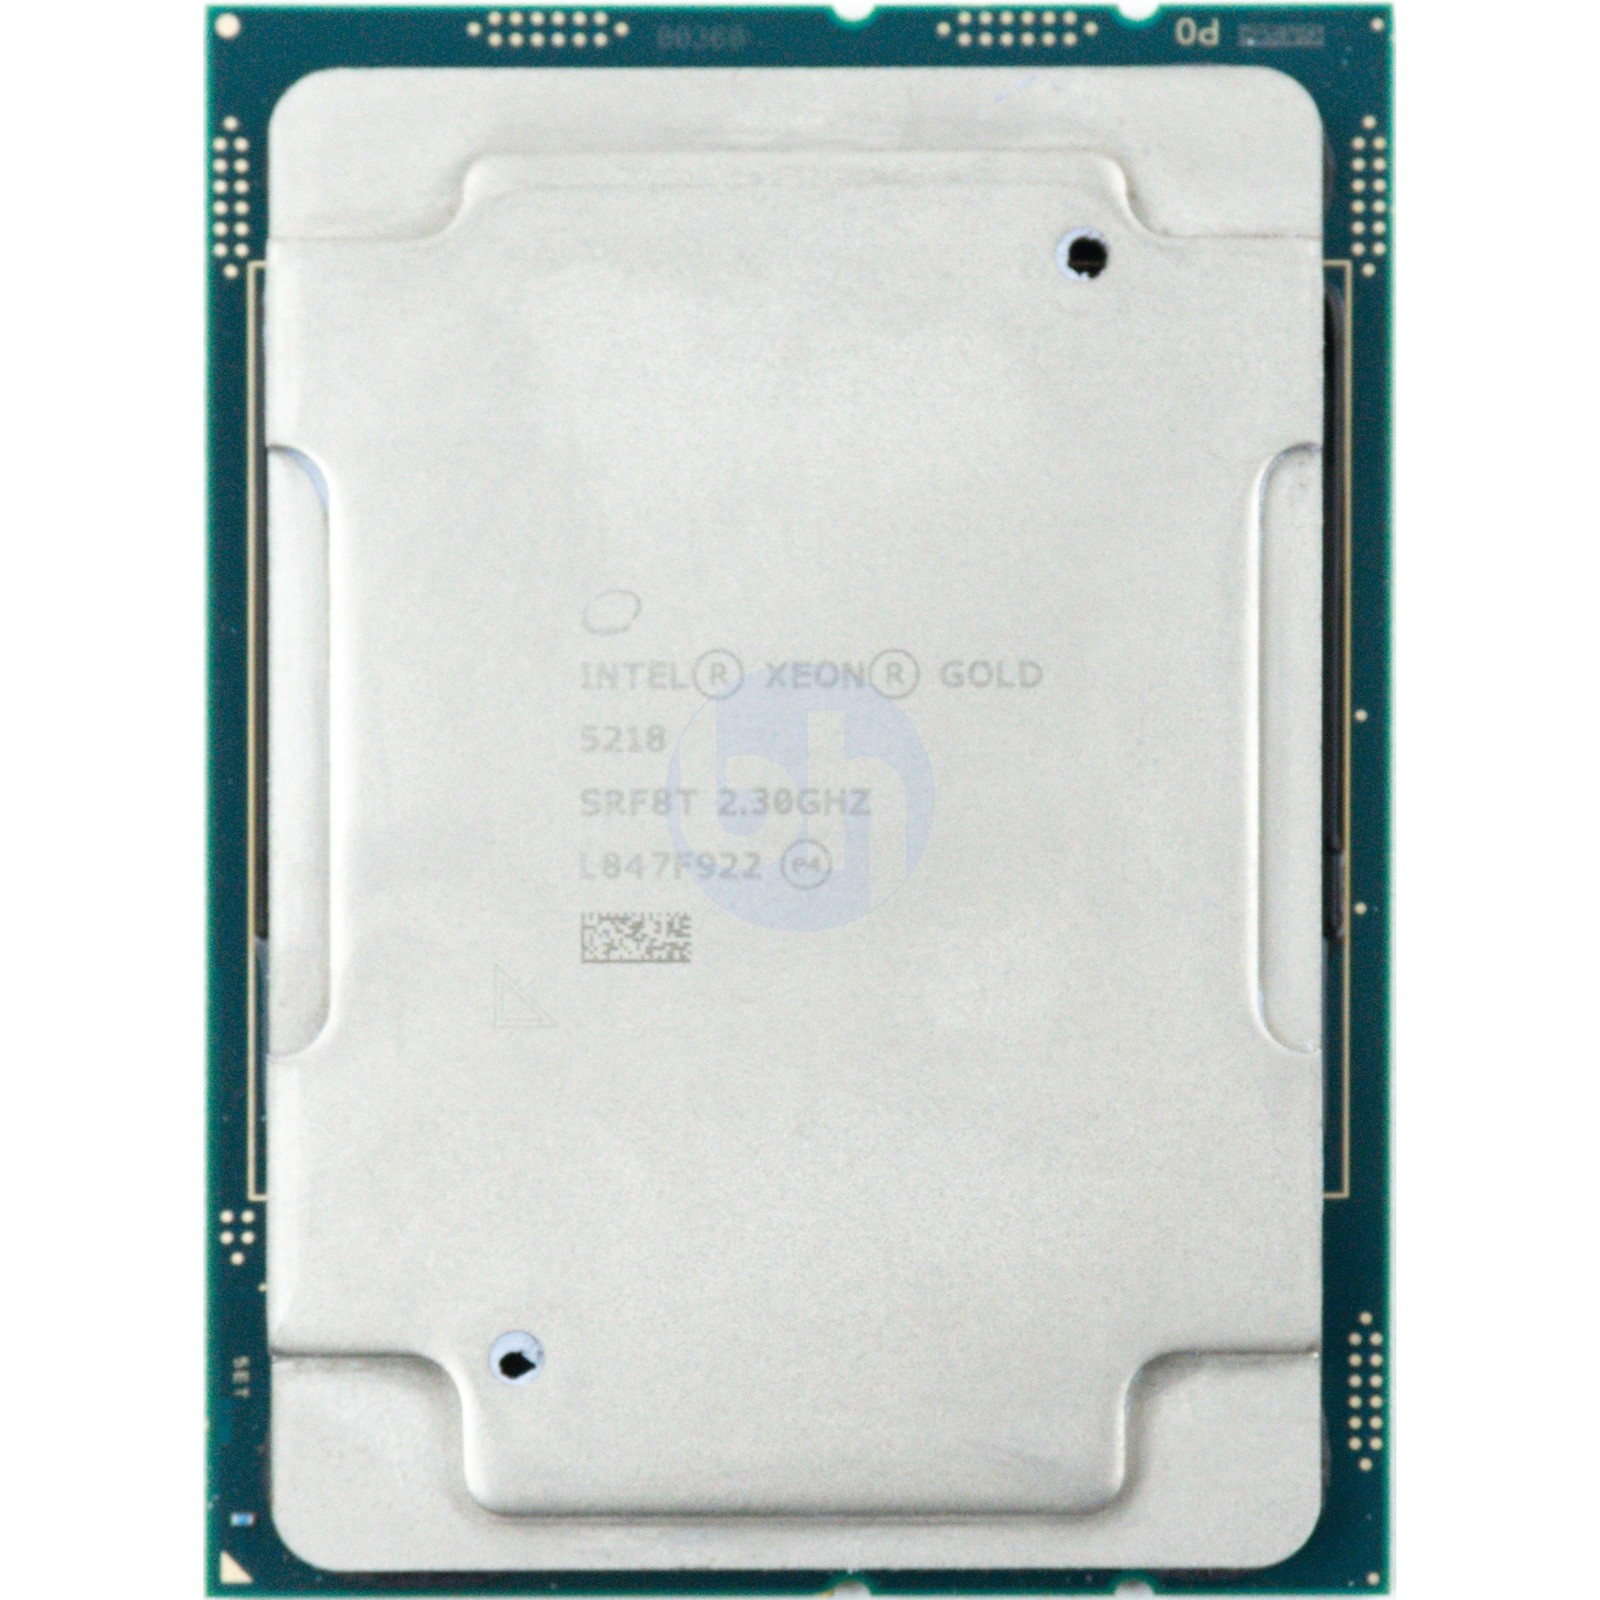 SRF8T Intel Xeon Gold 5218 (SRF8T) 2.30GHz 16-Core LGA3647 125W 22MB CPU